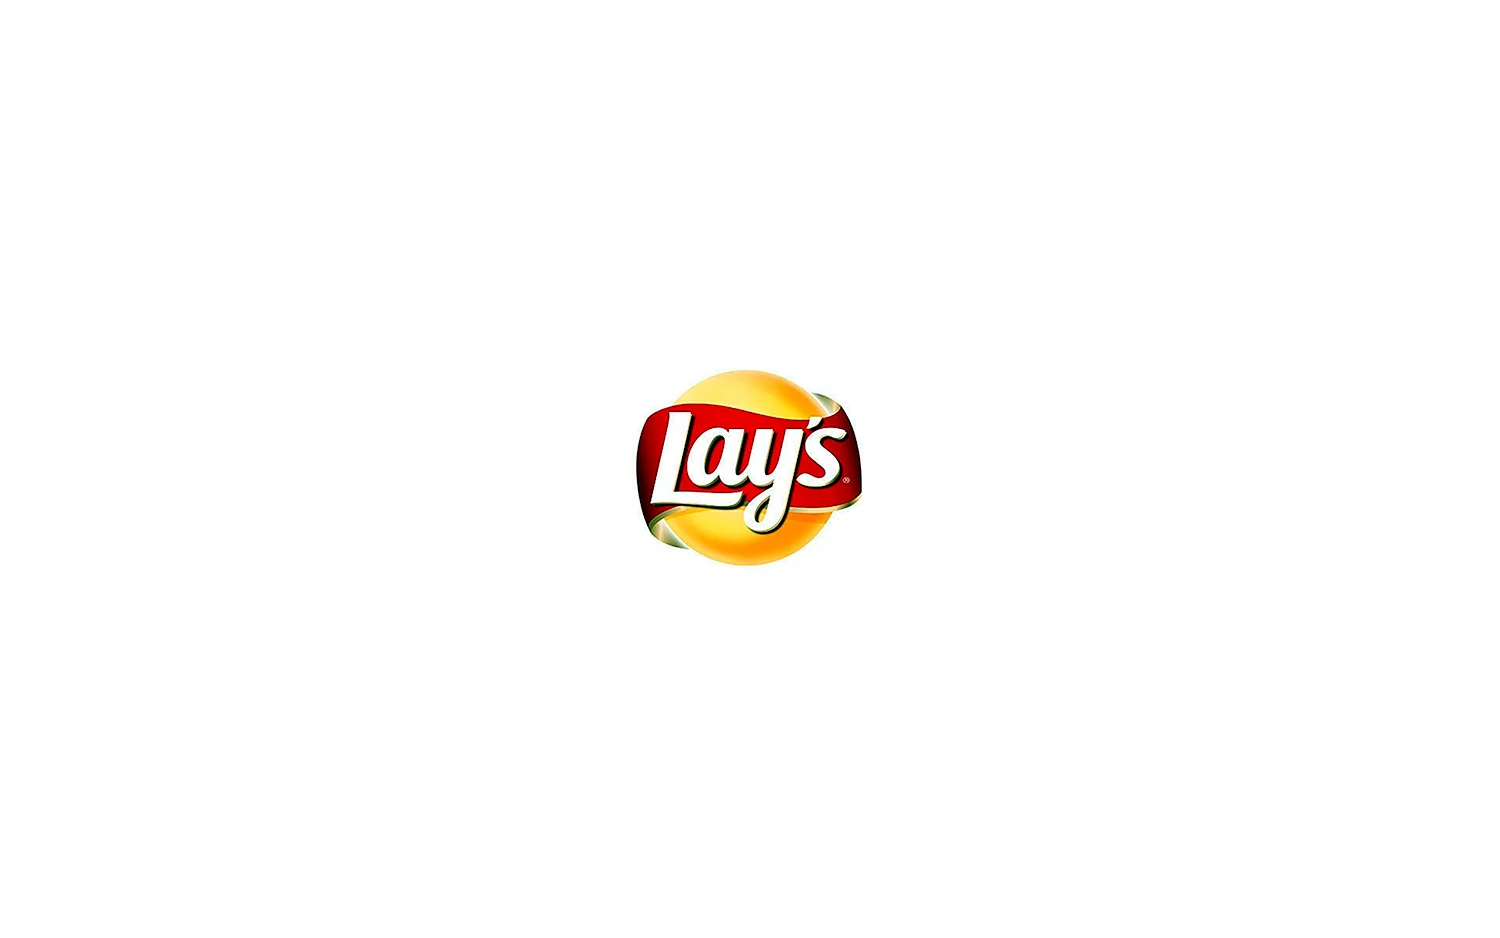 Логотип лейс (37 лучших фото)